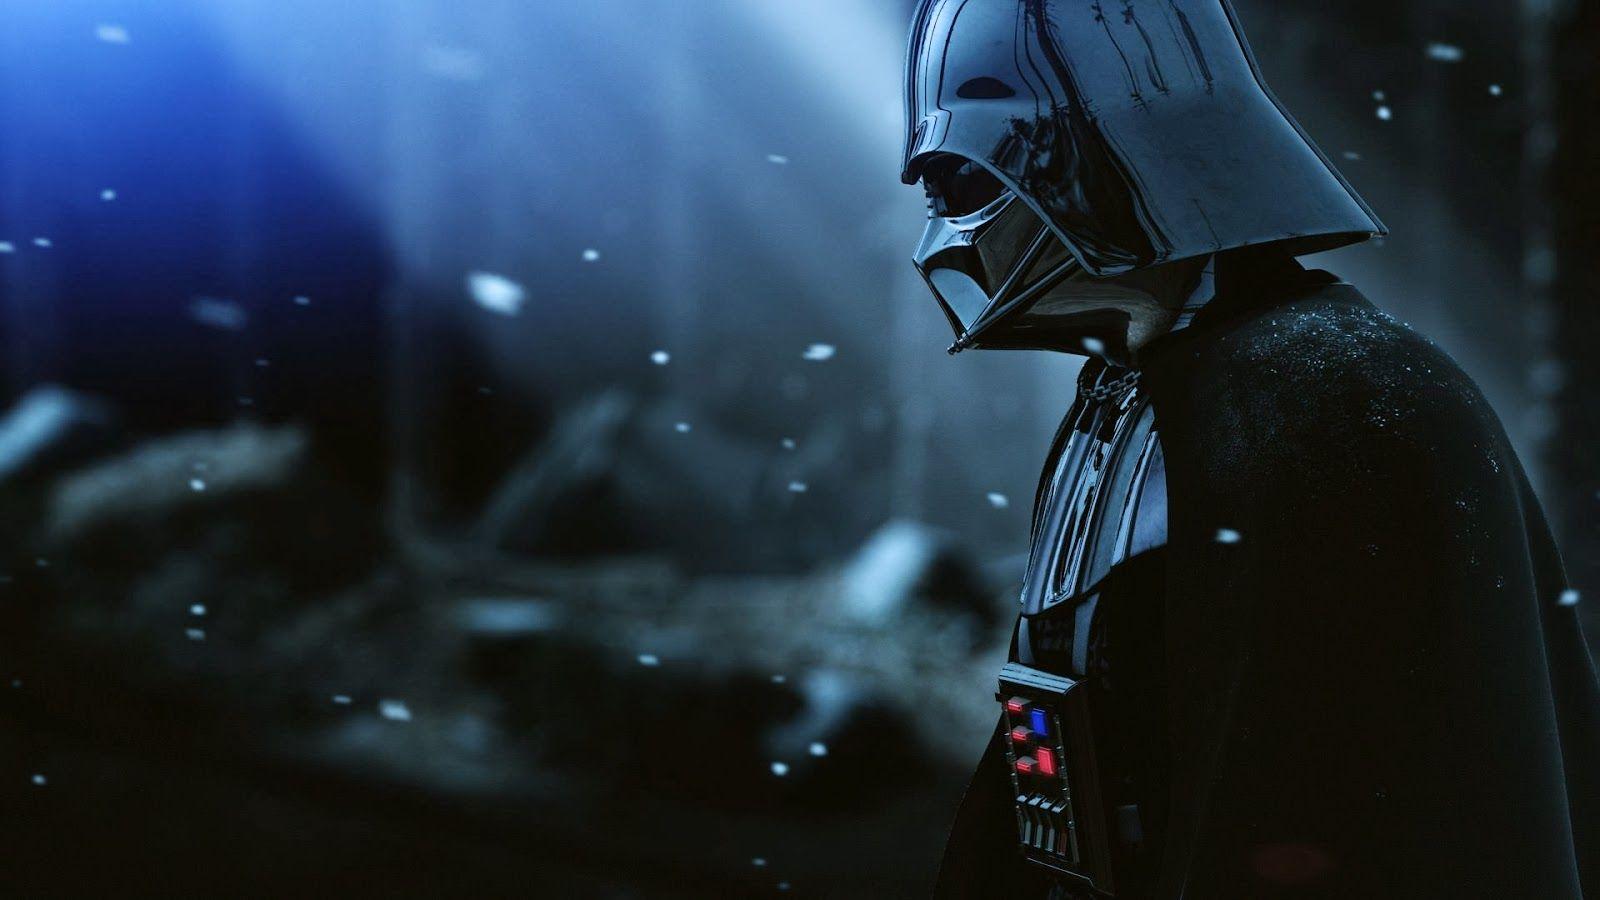 Star Wars: 8 wallpaper of Darth Vader